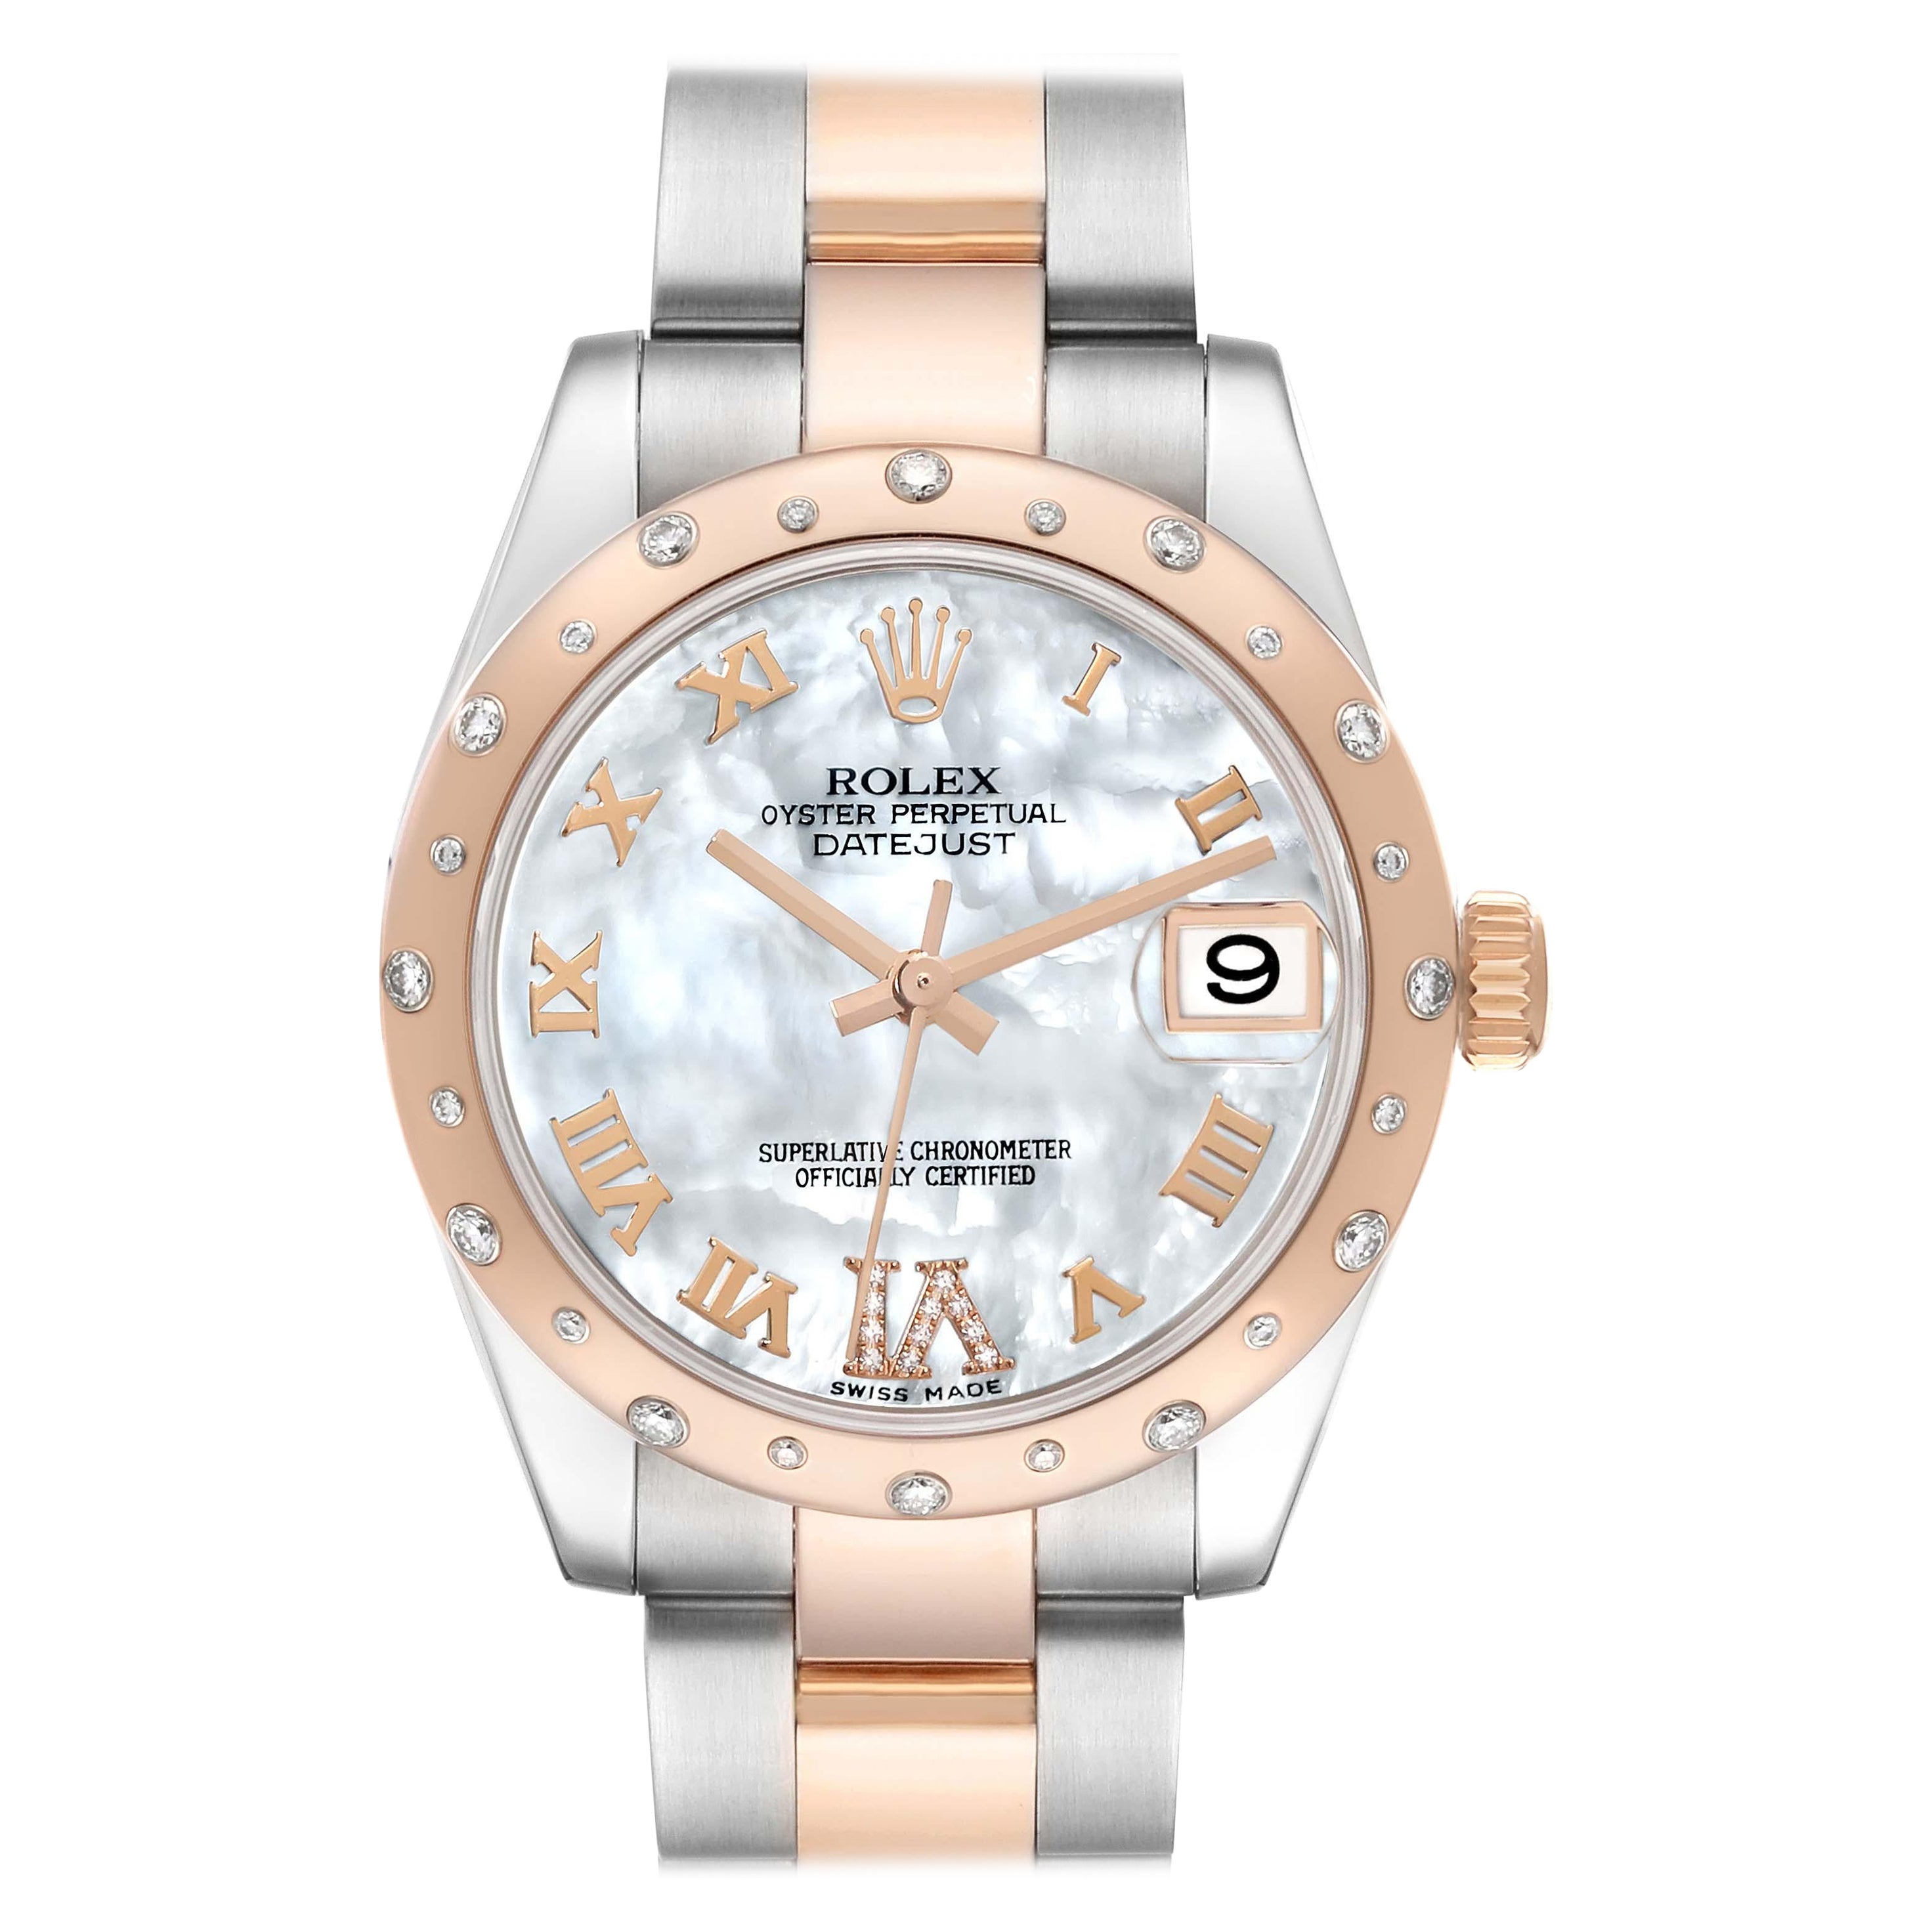 Rolex Montre Datejust 31 grandeur nature en acier, or rose et diamants, pour femmes 178341